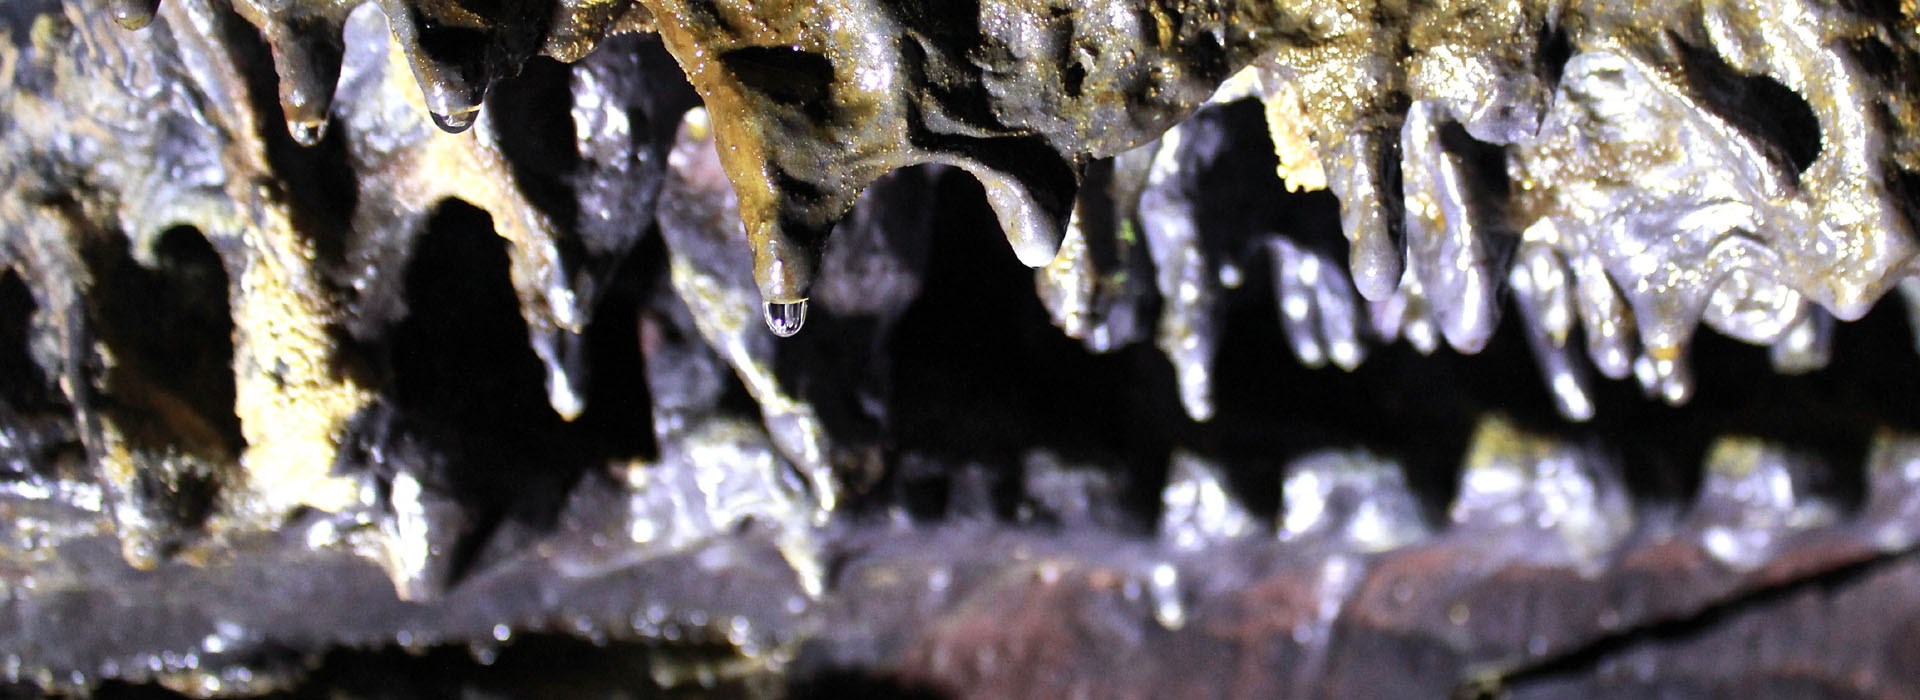 Visiter La grotte de Carvao - Açores